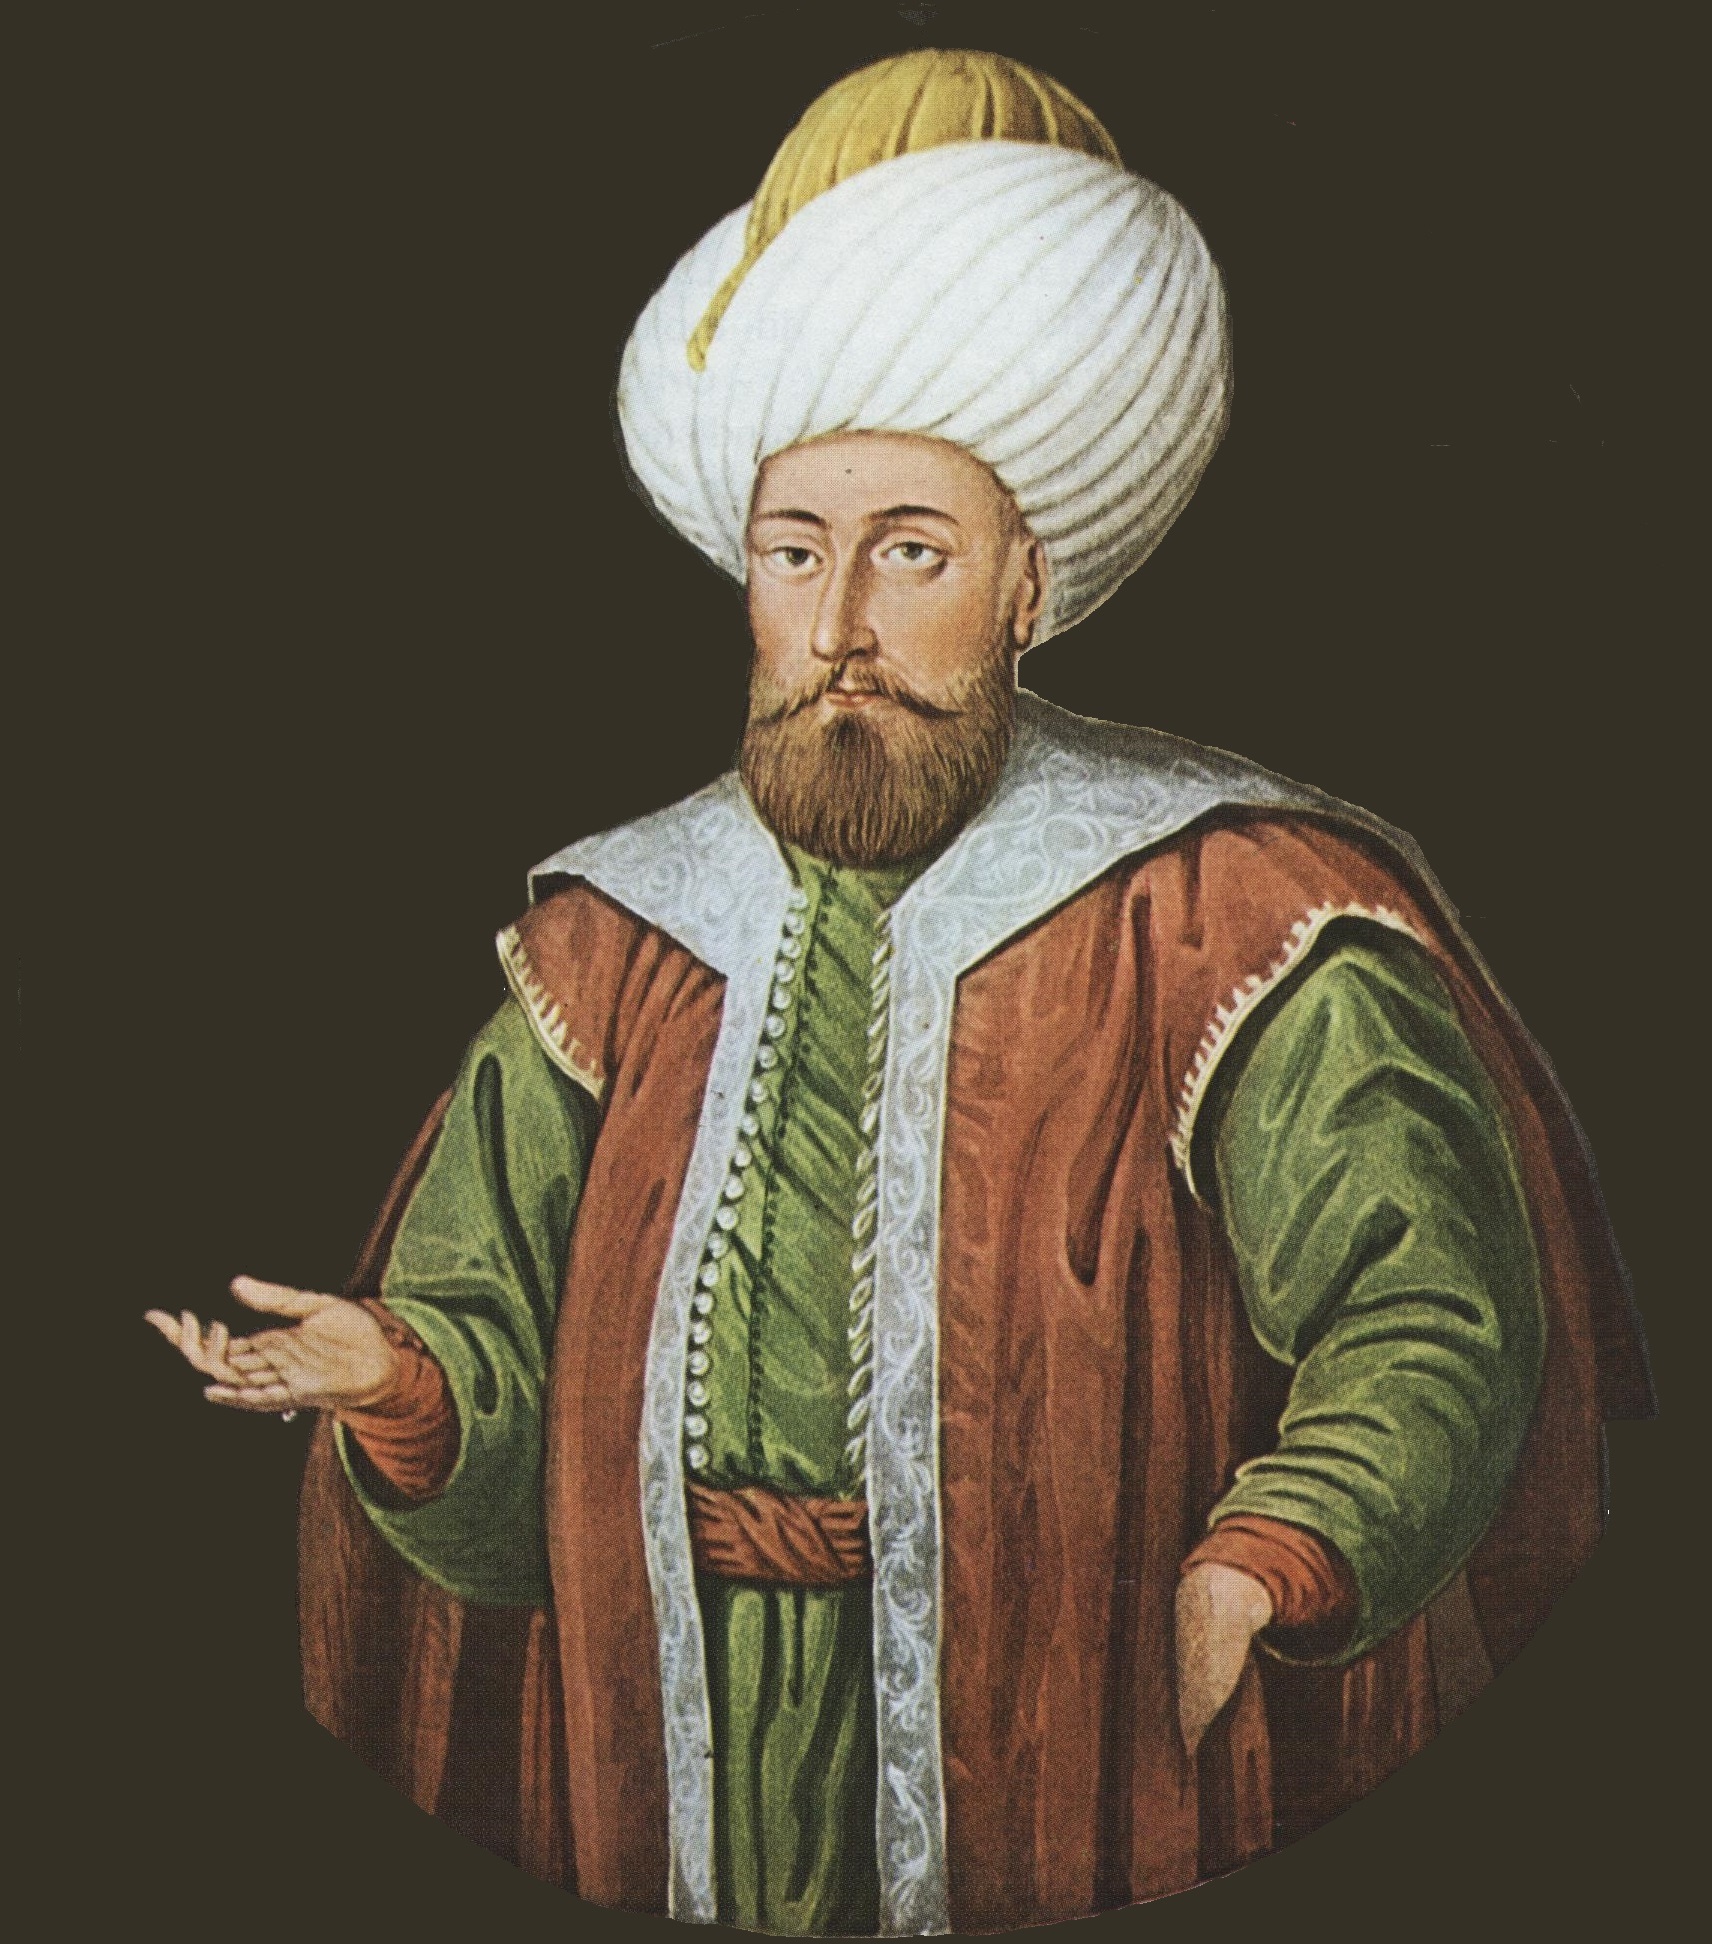 السلطان مراد الأول بن أورخان